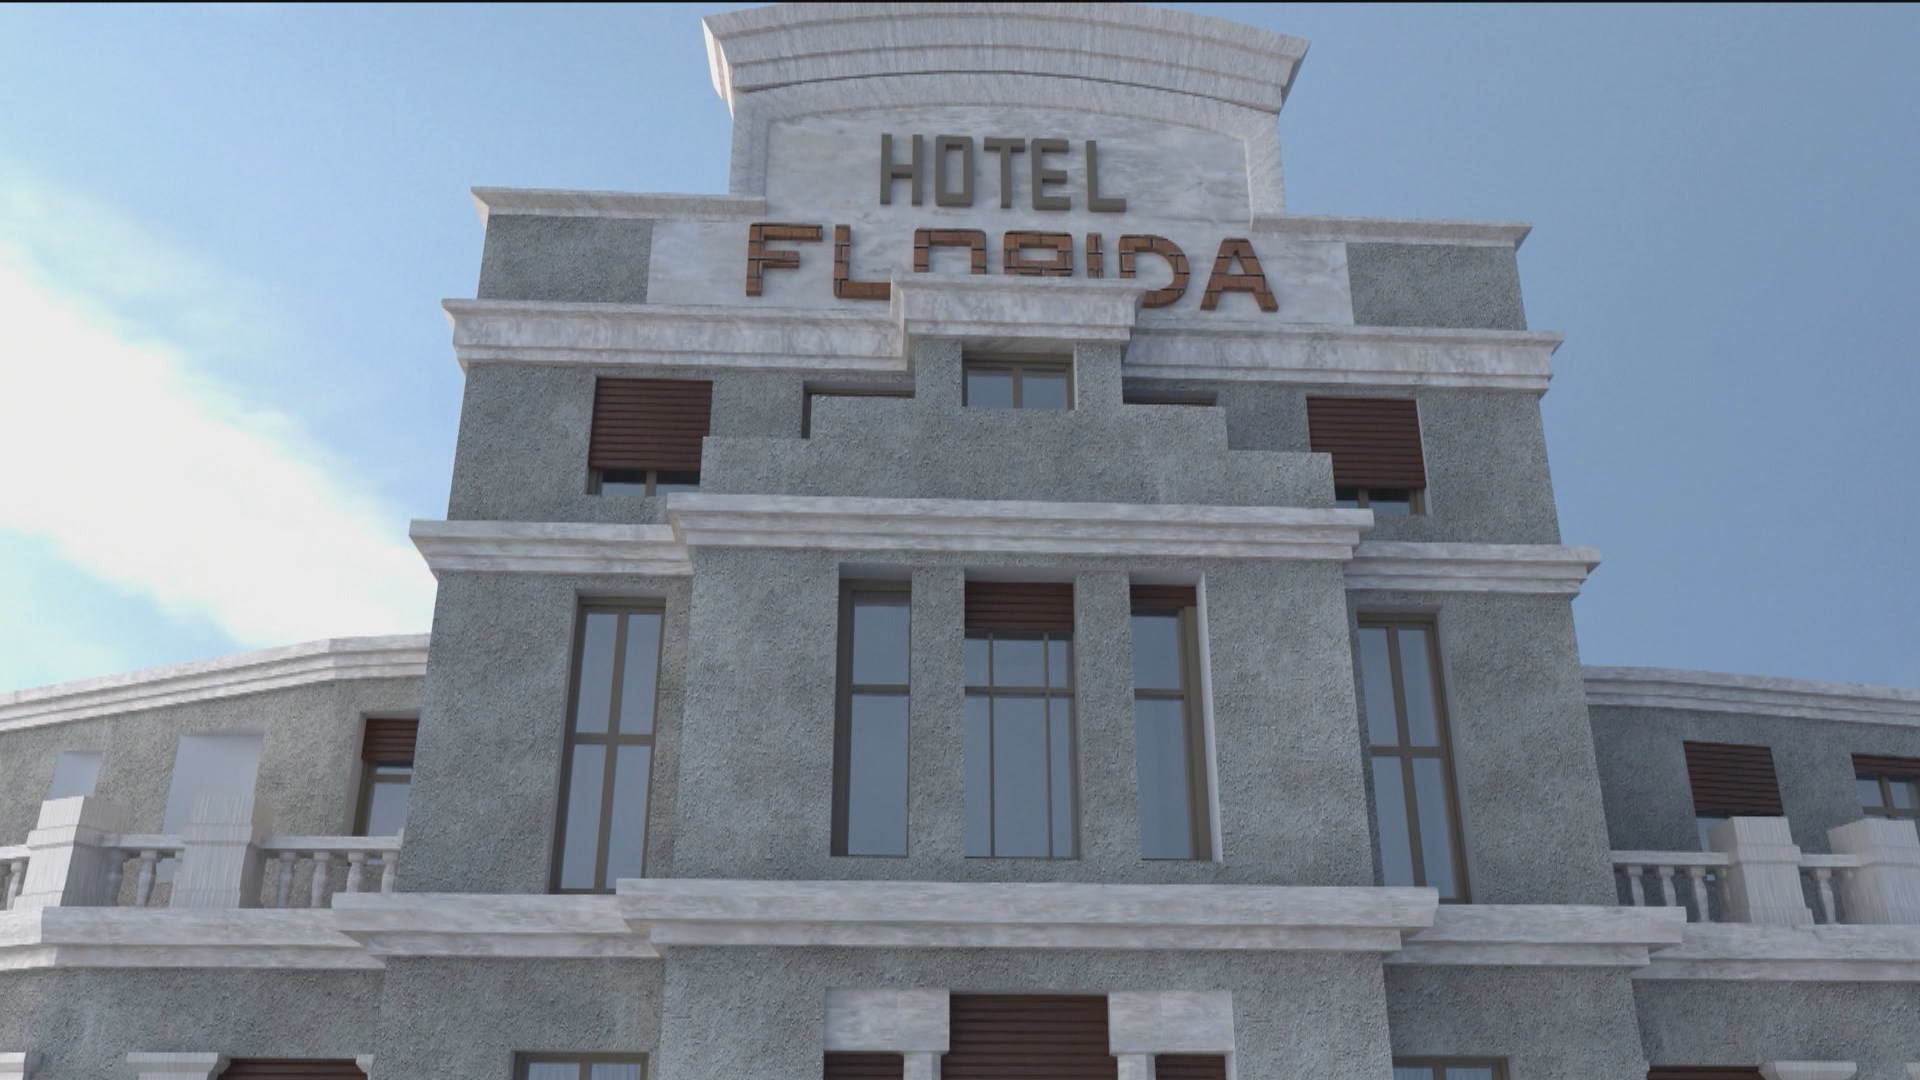 El legendario Hotel Florida, símbolo de la modernidad madrileña, 'cumple' 100 años